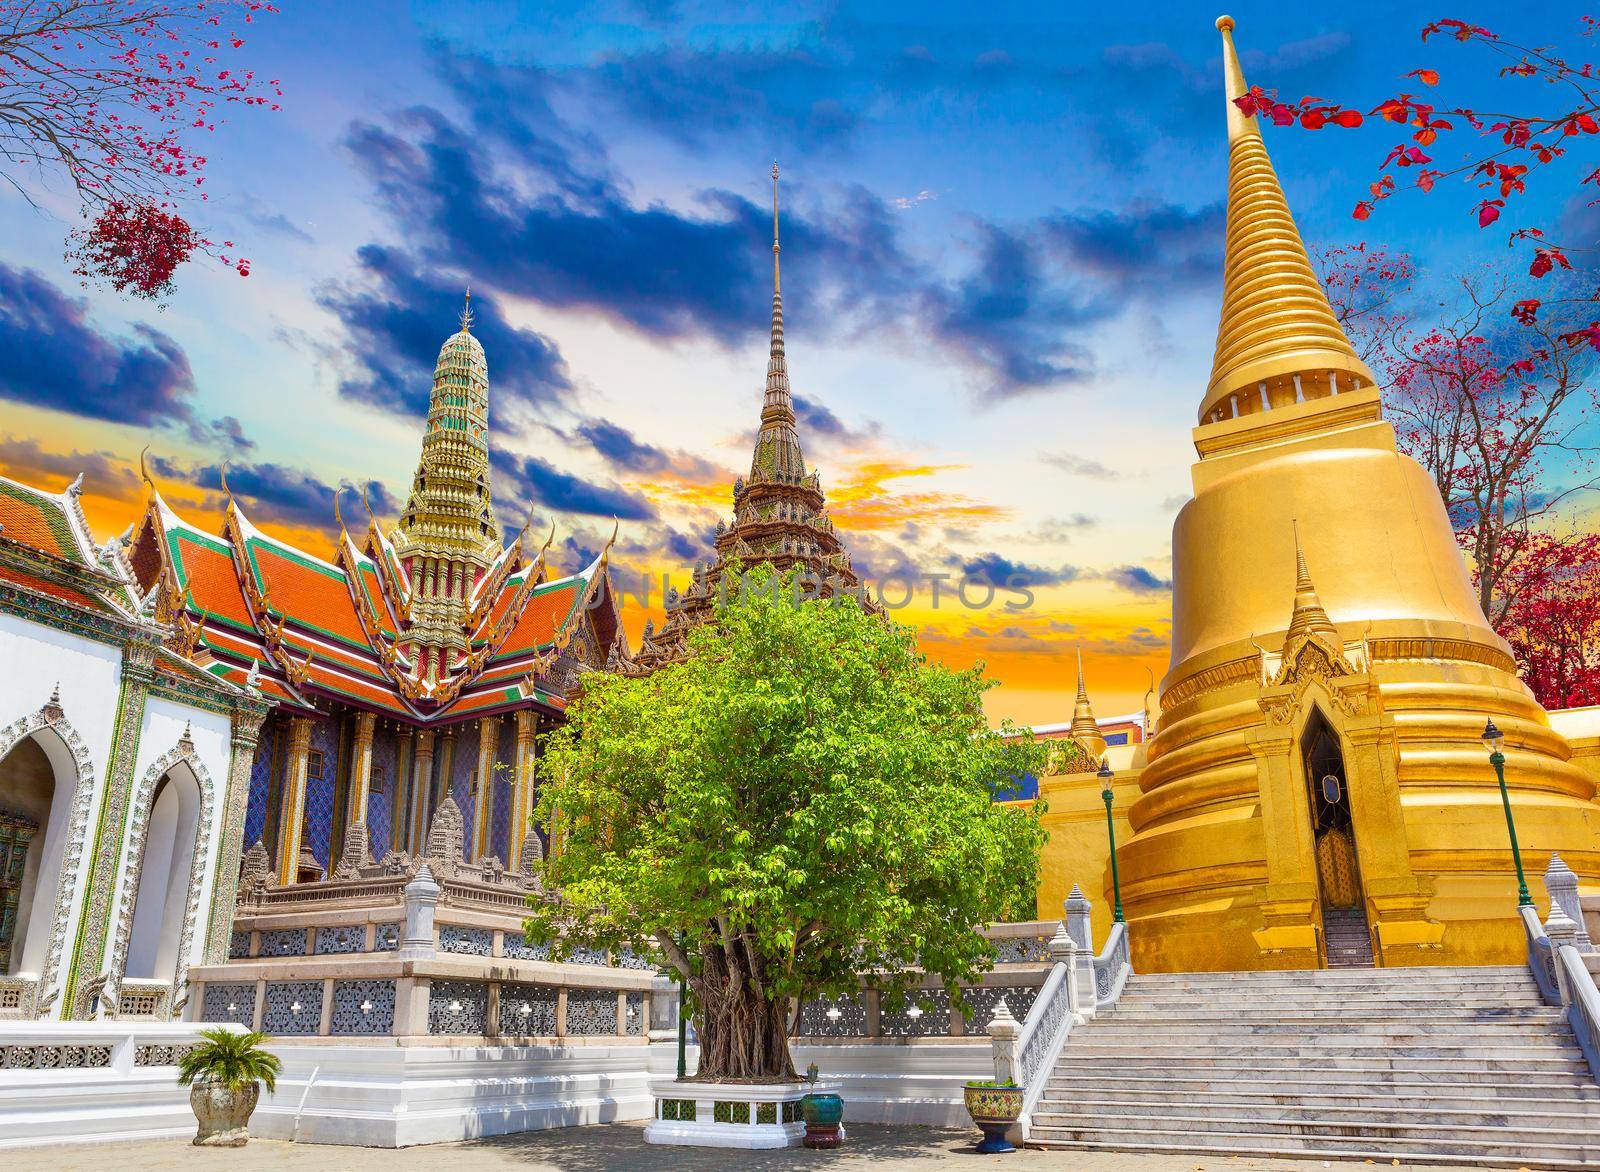 Grand palace and Wat phra keaw at Bangkok city